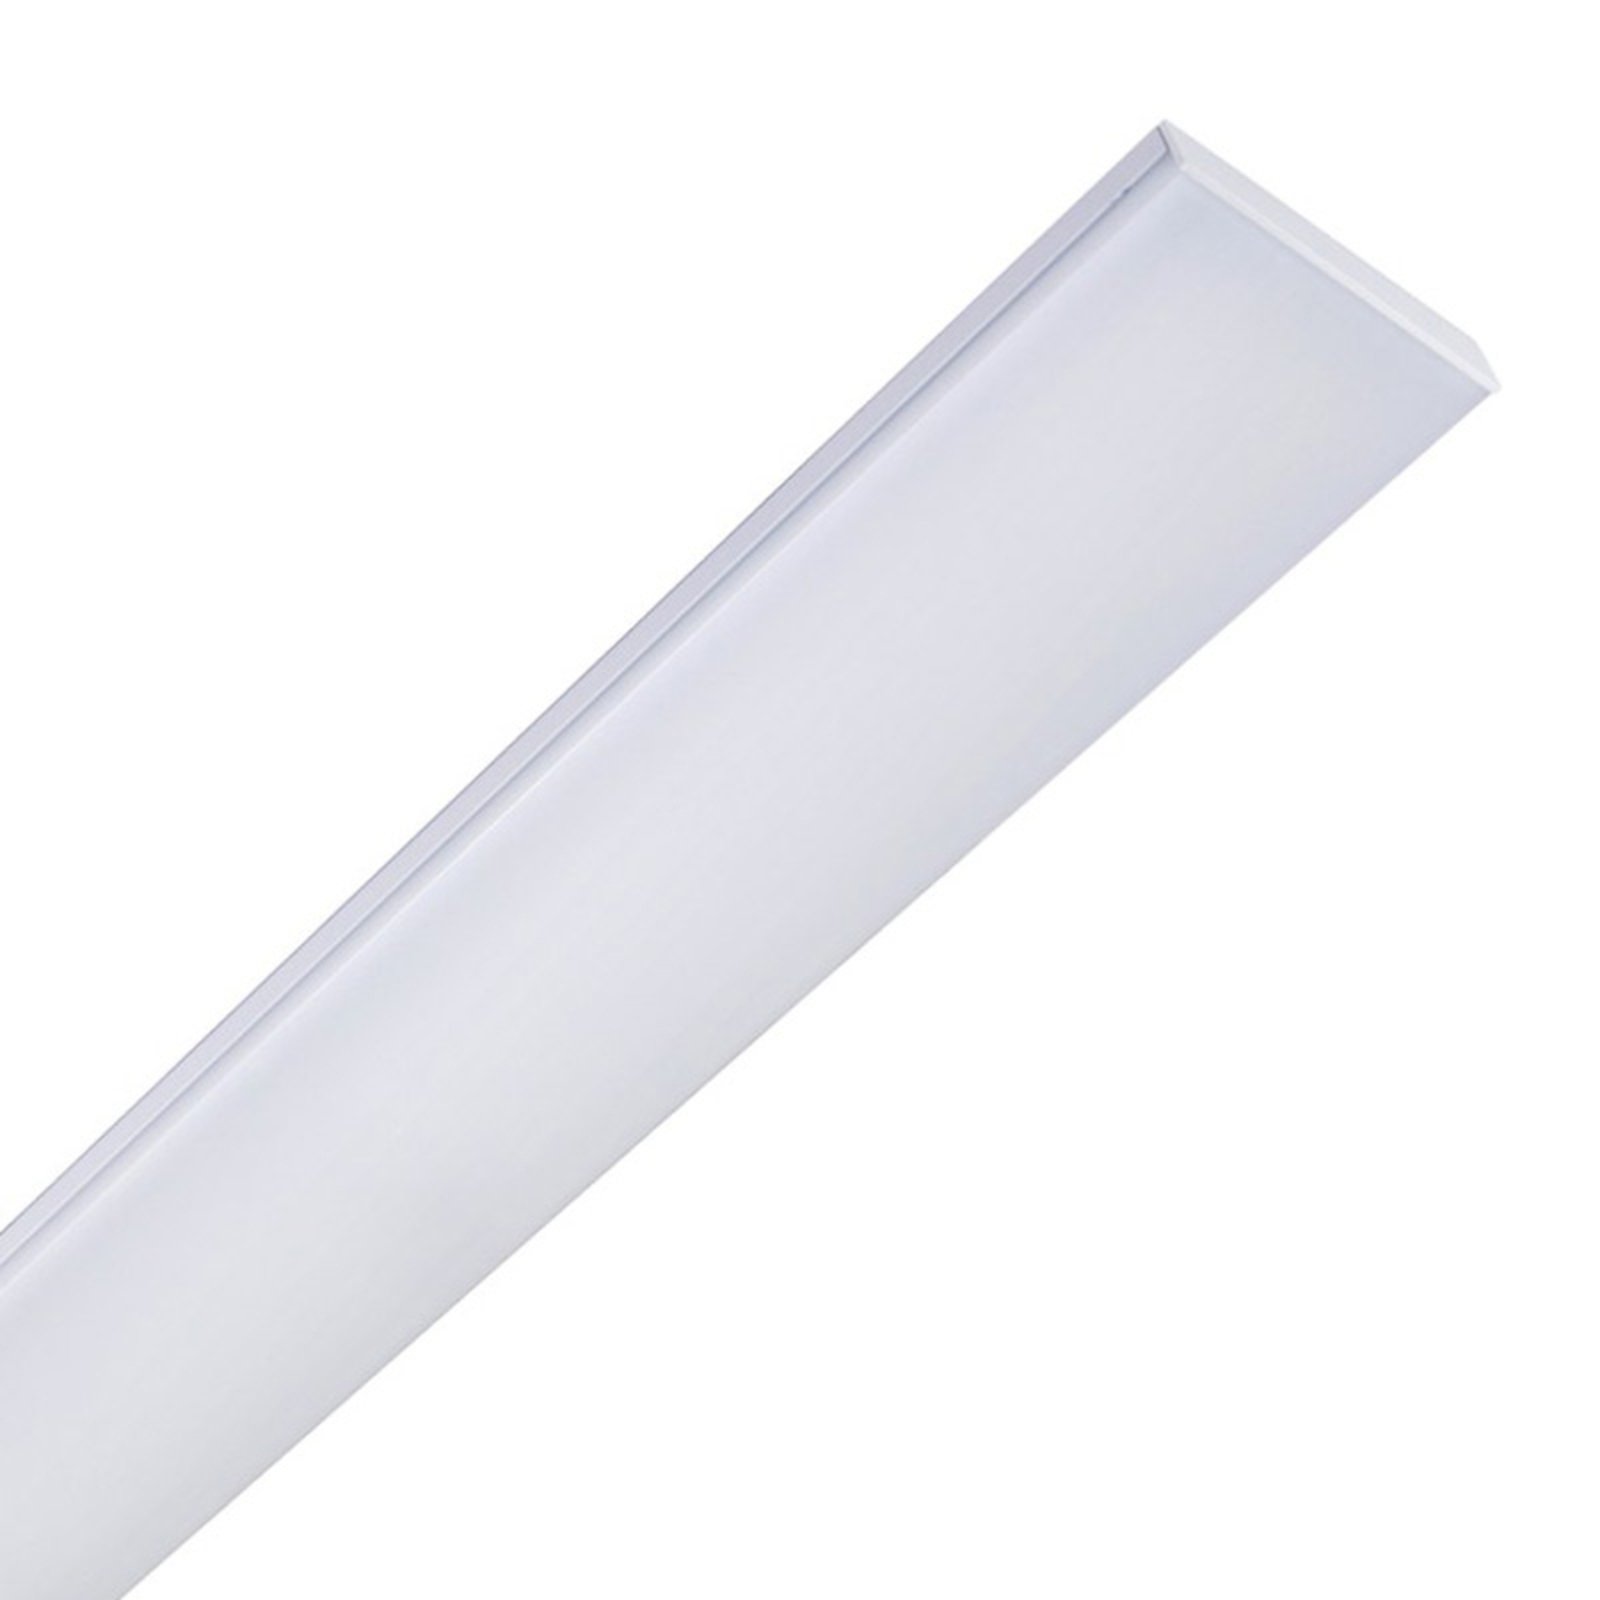 Φωτιστικό οροφής Planus 60 LED με λευκά LED γενικής χρήσης